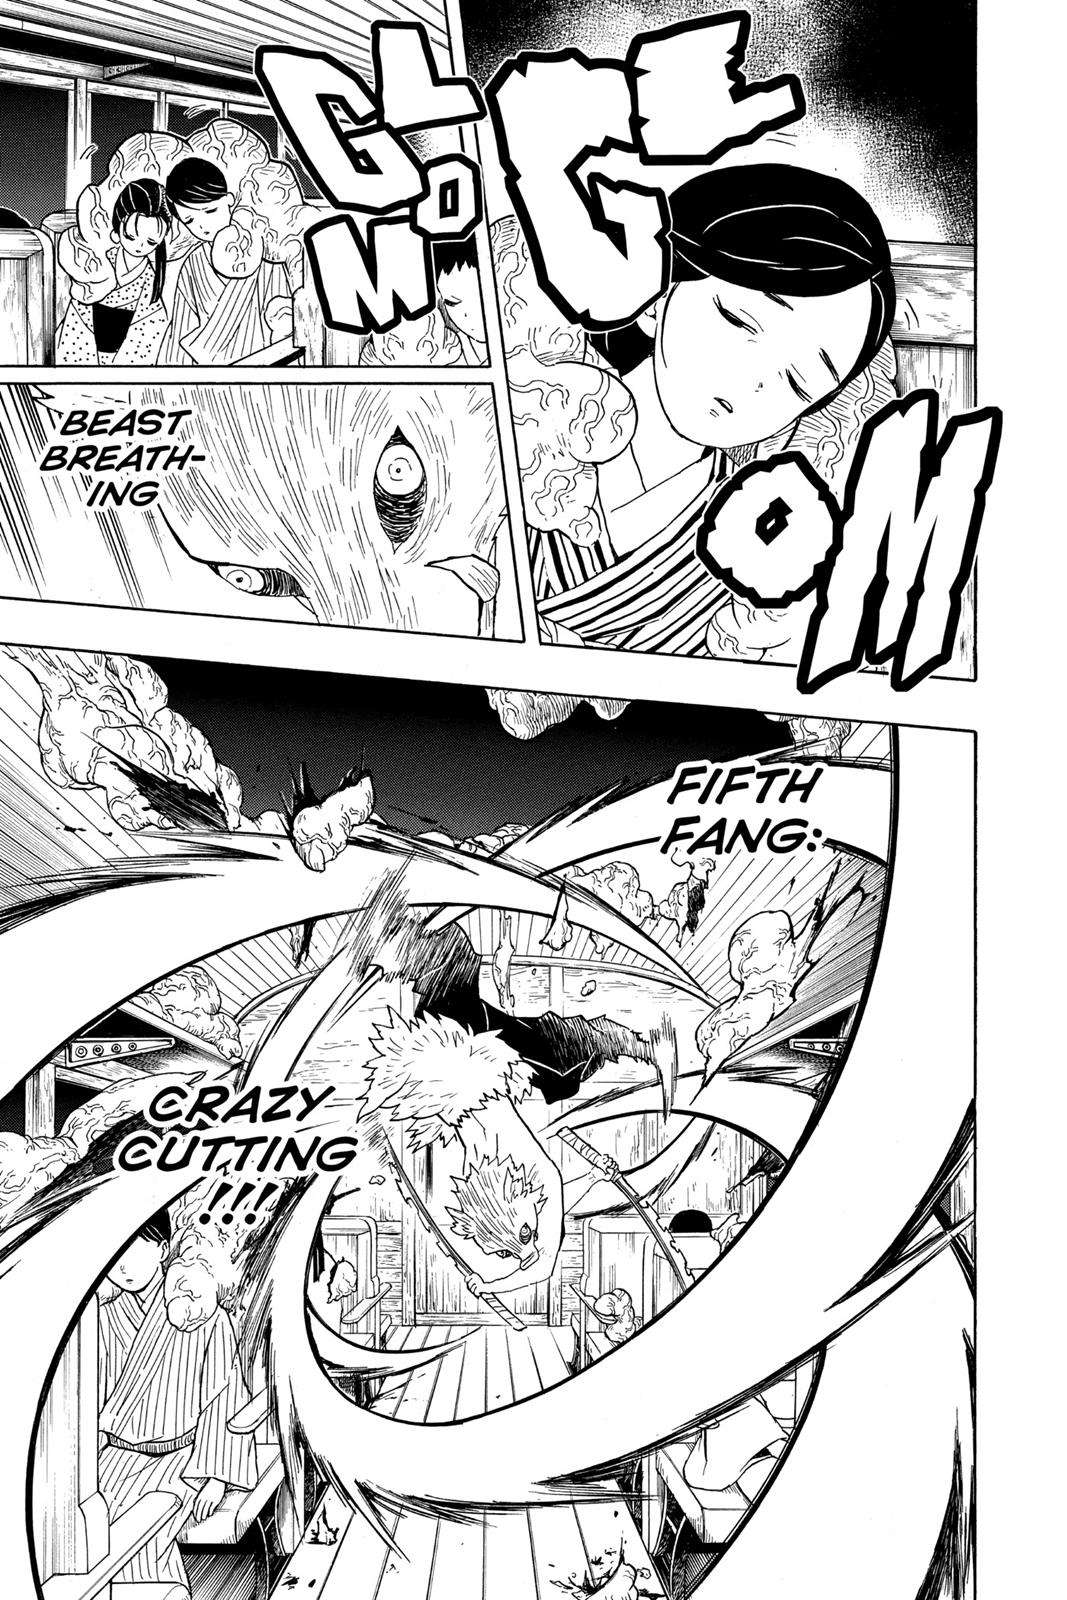 Demon Slayer Manga Manga Chapter - 60 - image 3